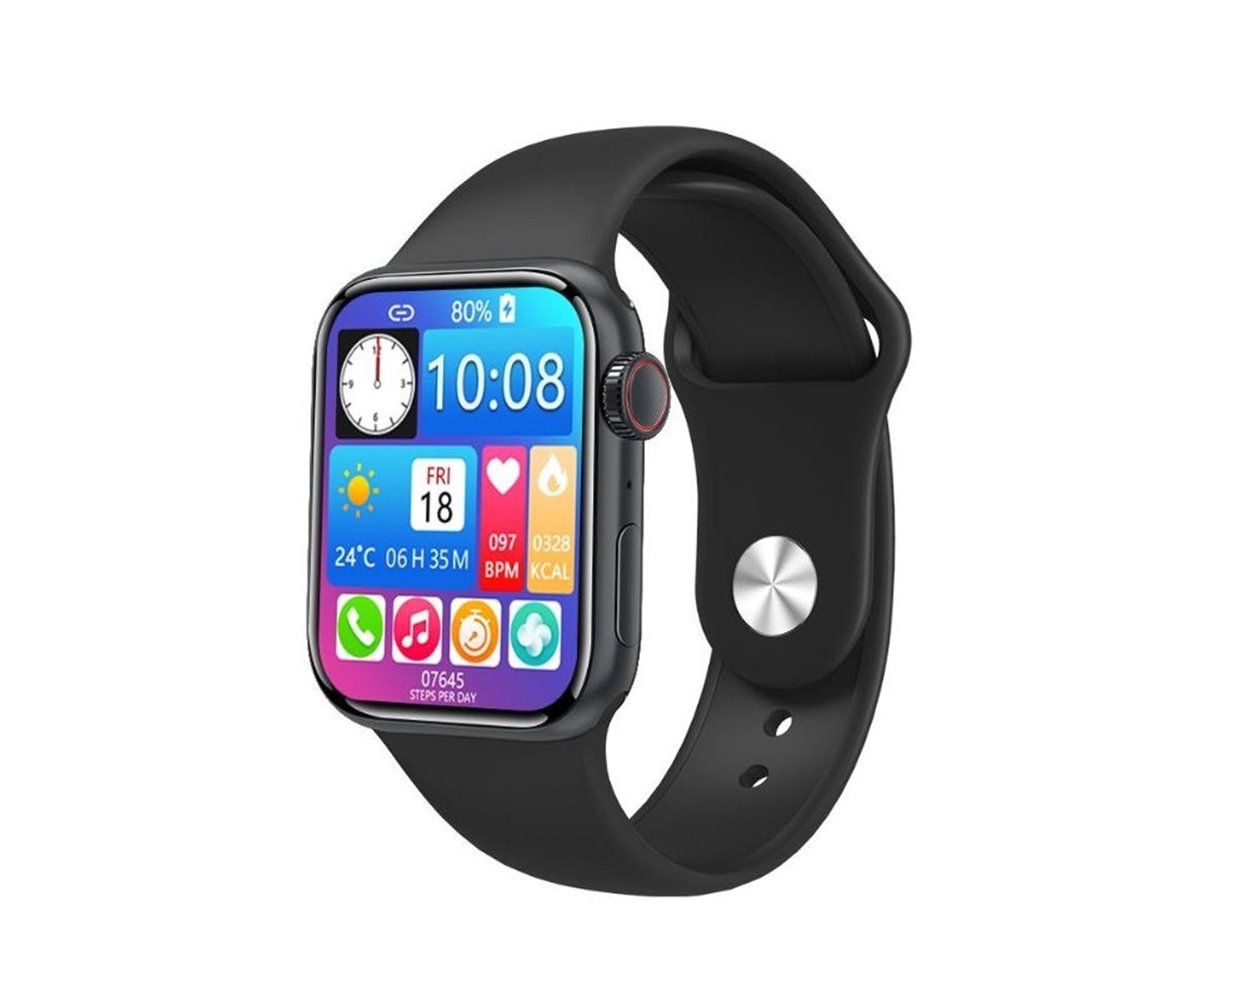 Smartwatch – XW99 PRO - 997356 - Black